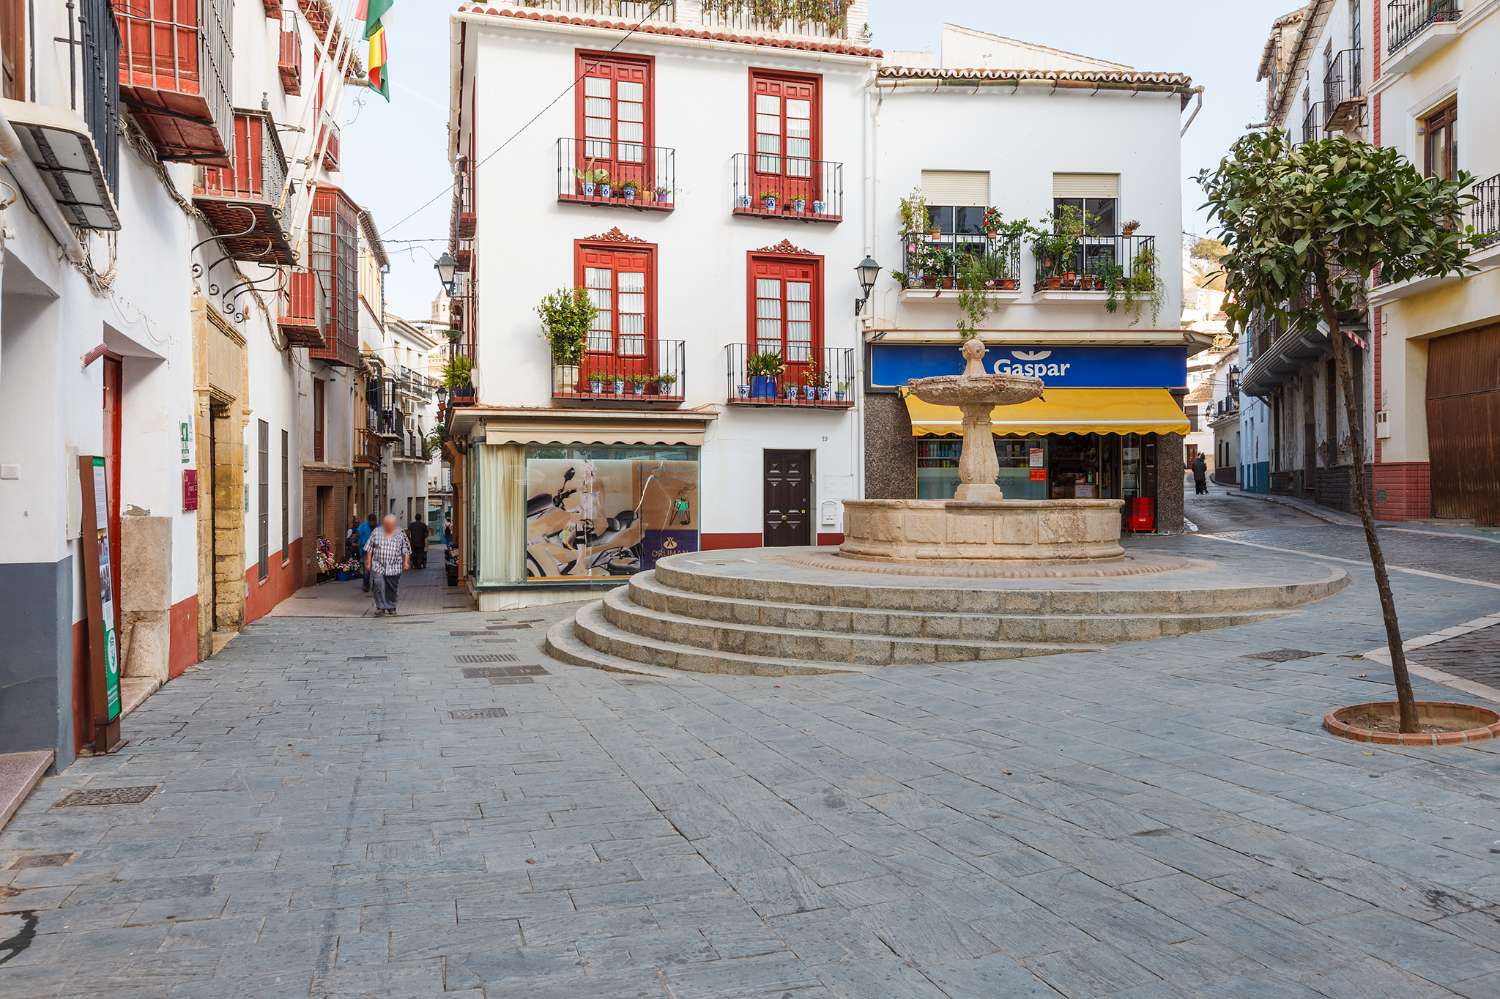 House for sale in Vélez-Málaga